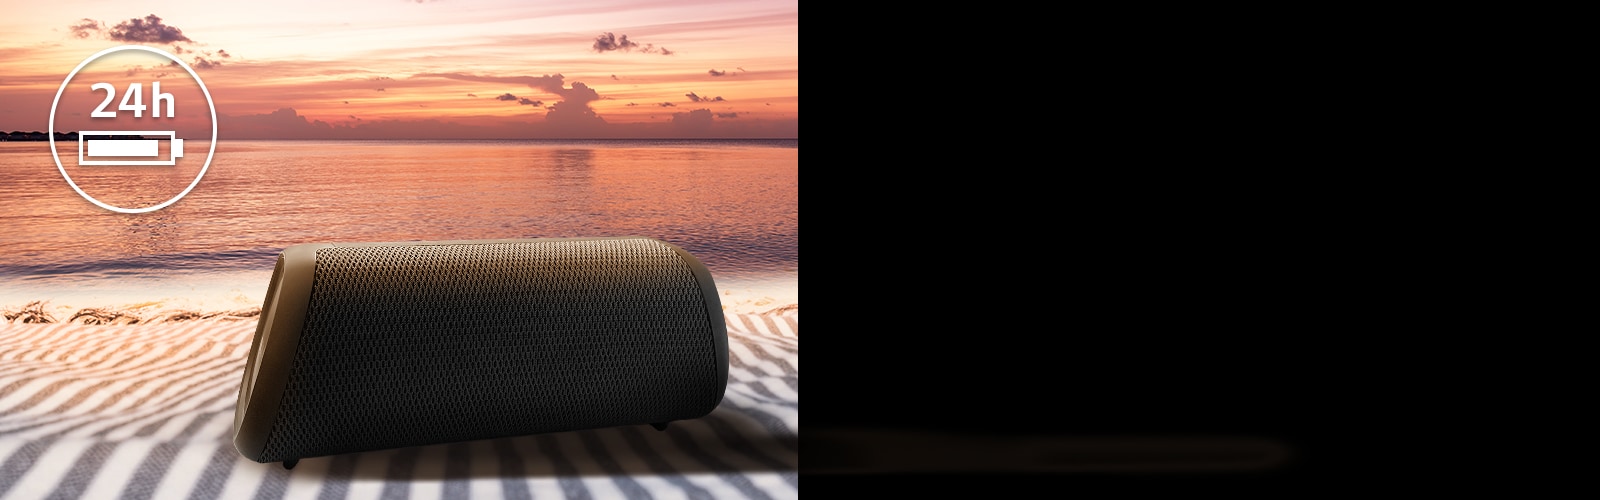 Το ηχείο τοποθετημένο πάνω σε μια πετσέτα παραλίας. Μπροστά από το ηχείο, φαίνεται μια παραλία στο ηλιοβασίλεμα, υποδεικνύοντας ότι αυτό το ηχείο μπορεί να είναι σε συνεχή λειτουργία έως και 24 ώρες.